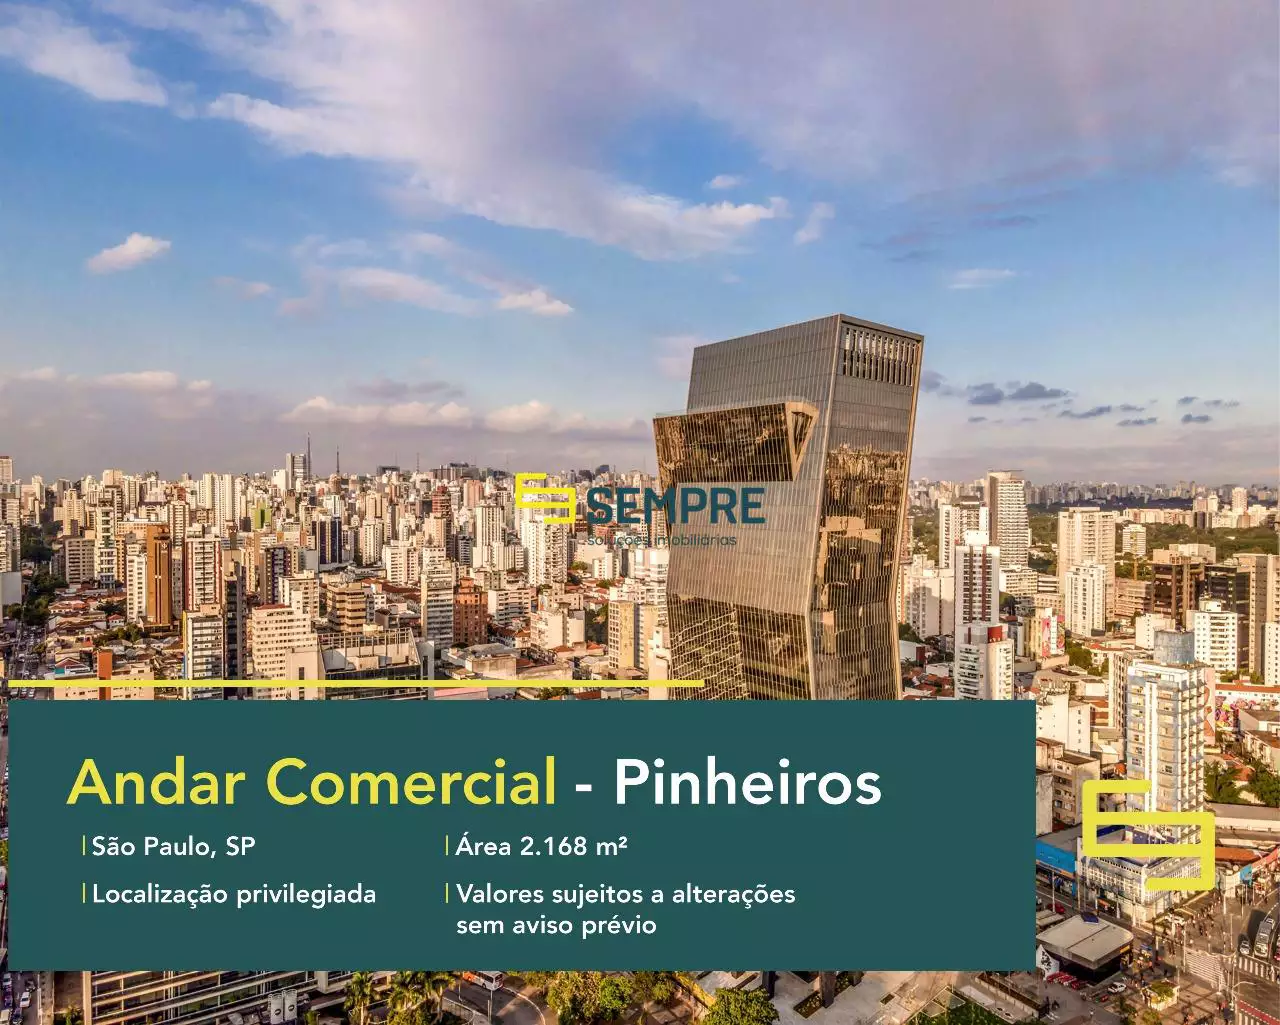 Laje corporativa no Pinheiros para locação em São Paulo, excelente localização. O estabelecimento comercial conta com área de 2.168 m².